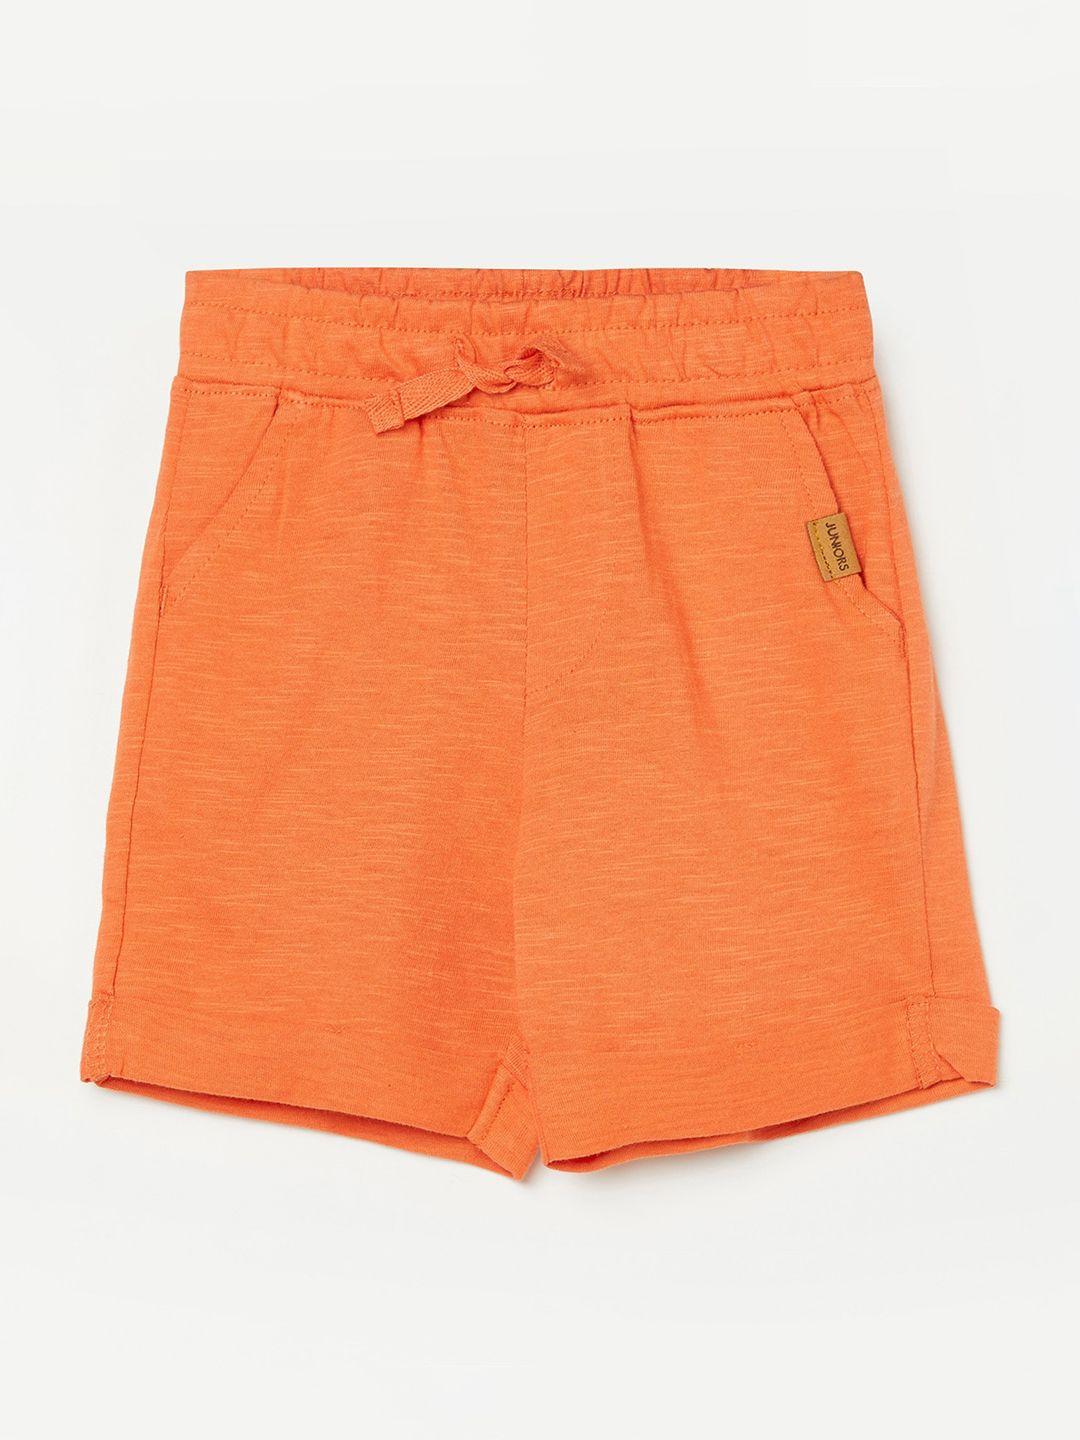 juniors-by-lifestyle-boys-orange-shorts